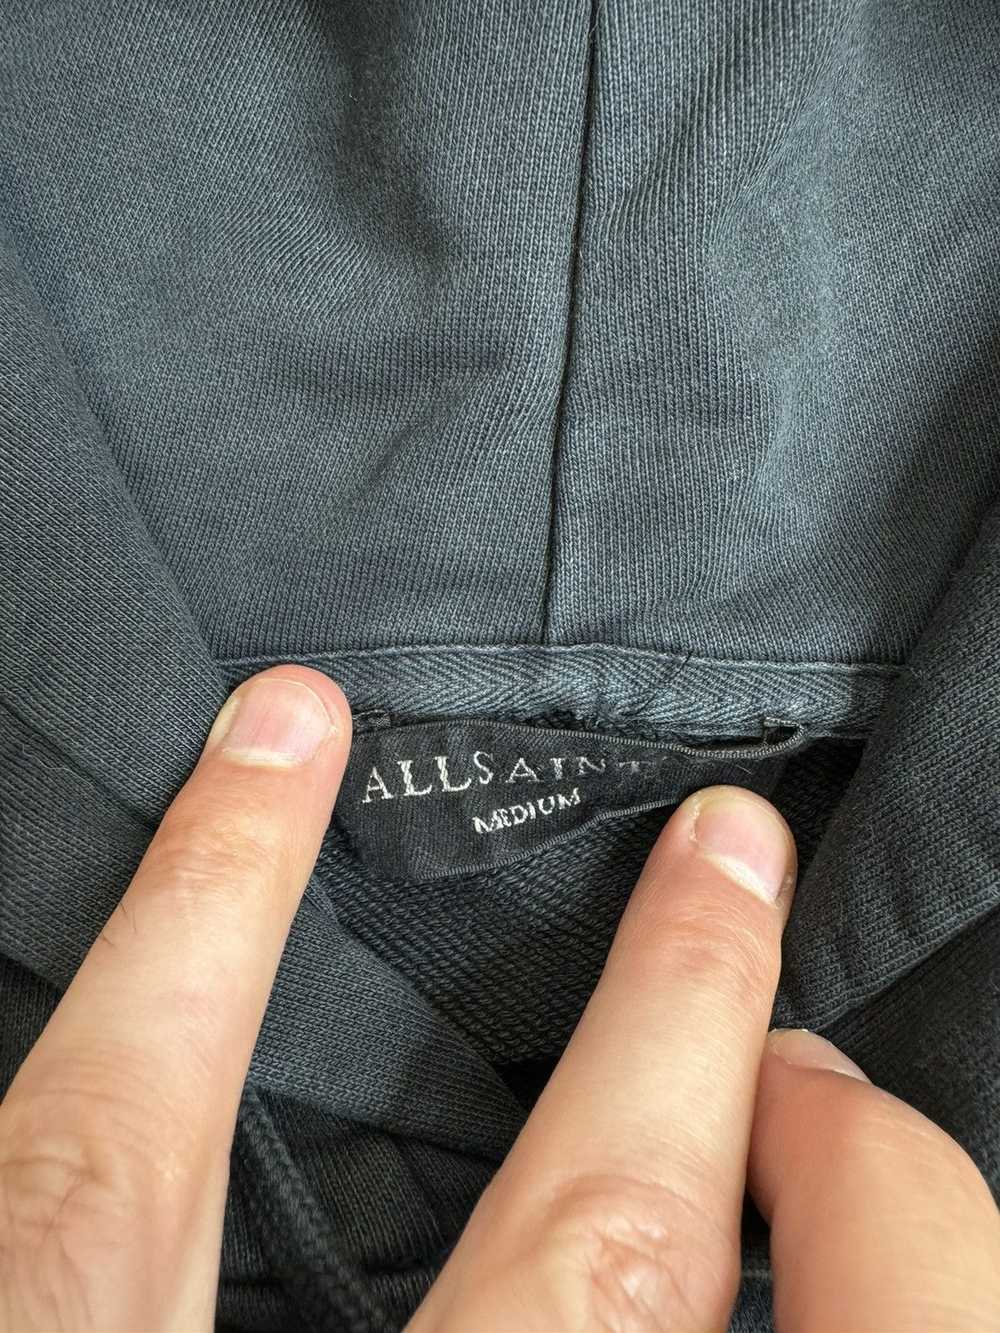 Allsaints × Japanese Brand Allsaints Black Oversi… - image 4